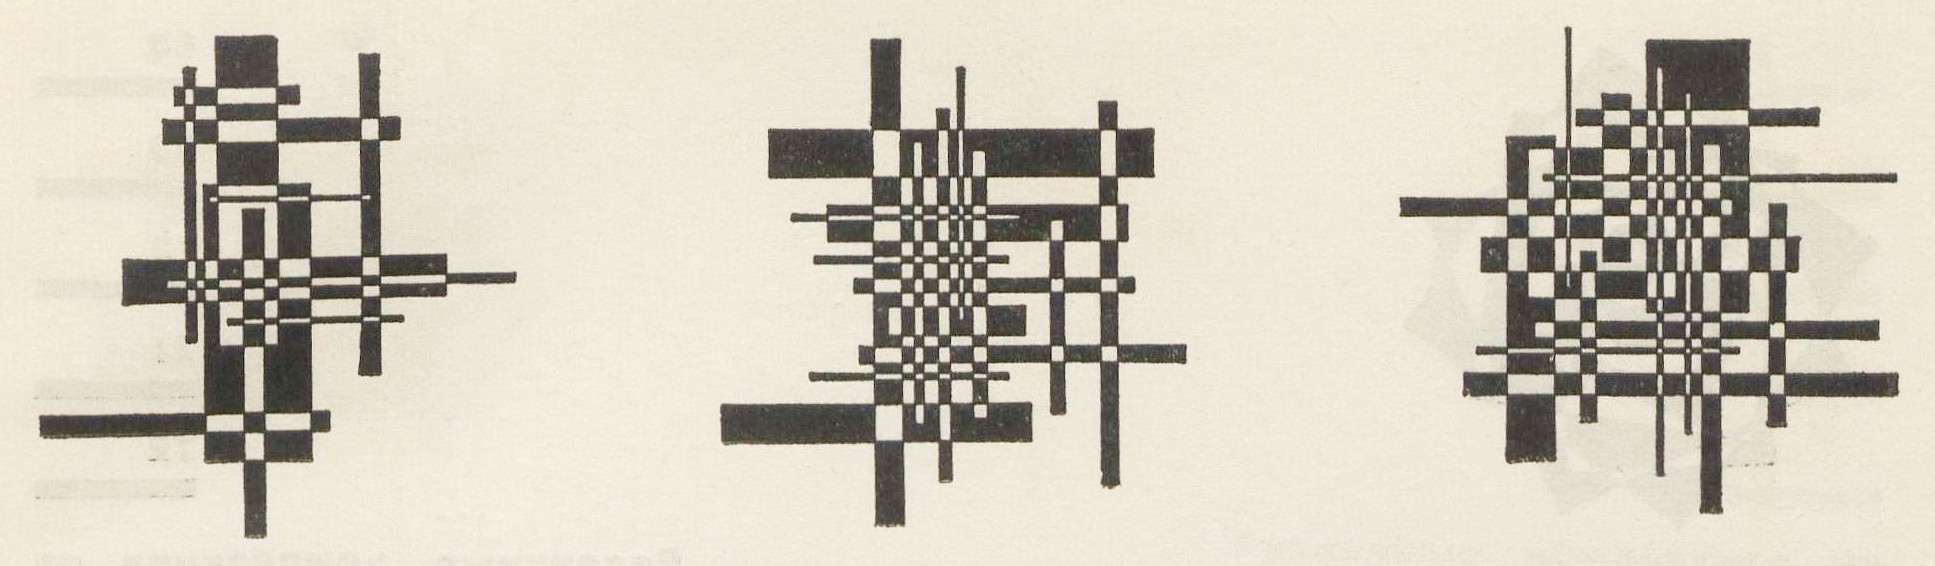 65, 66, 67 Усложненные композиции двойного цвета из ряда прямоугольников с наличием конструктивных признаков